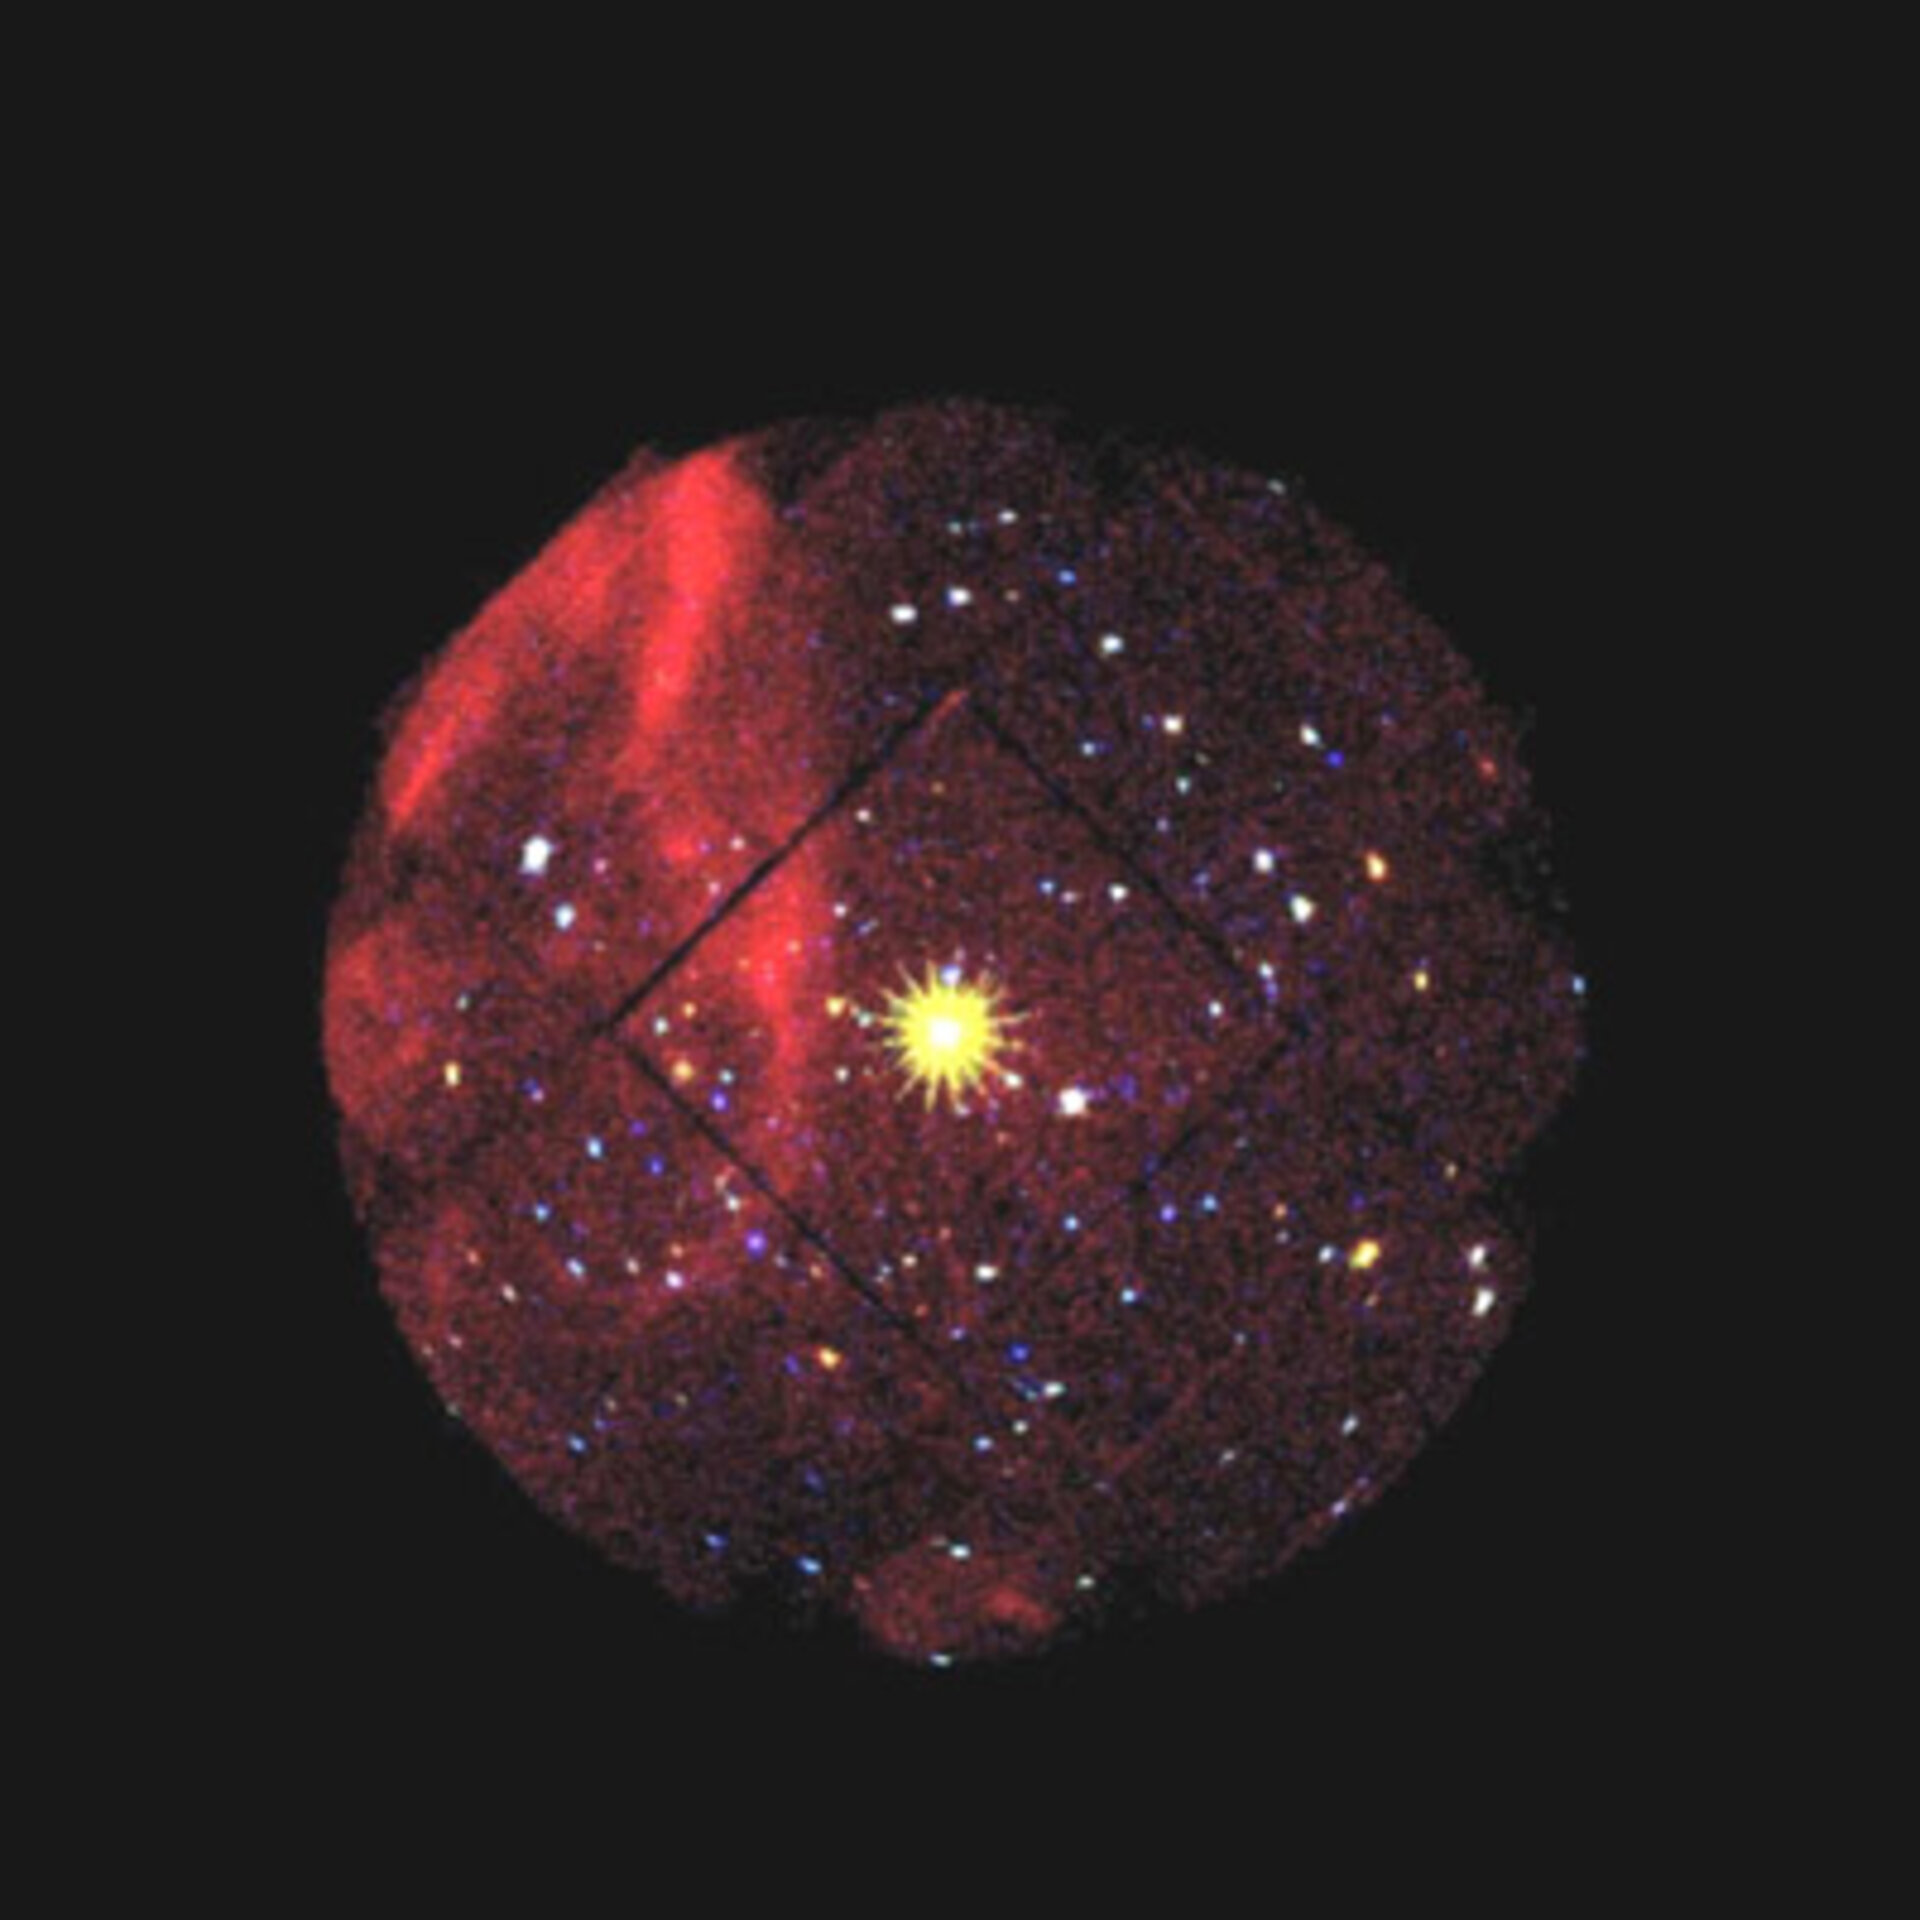 XMM-Newton mesure le champ magnétique d’une étoile à neutrons pour la première fois